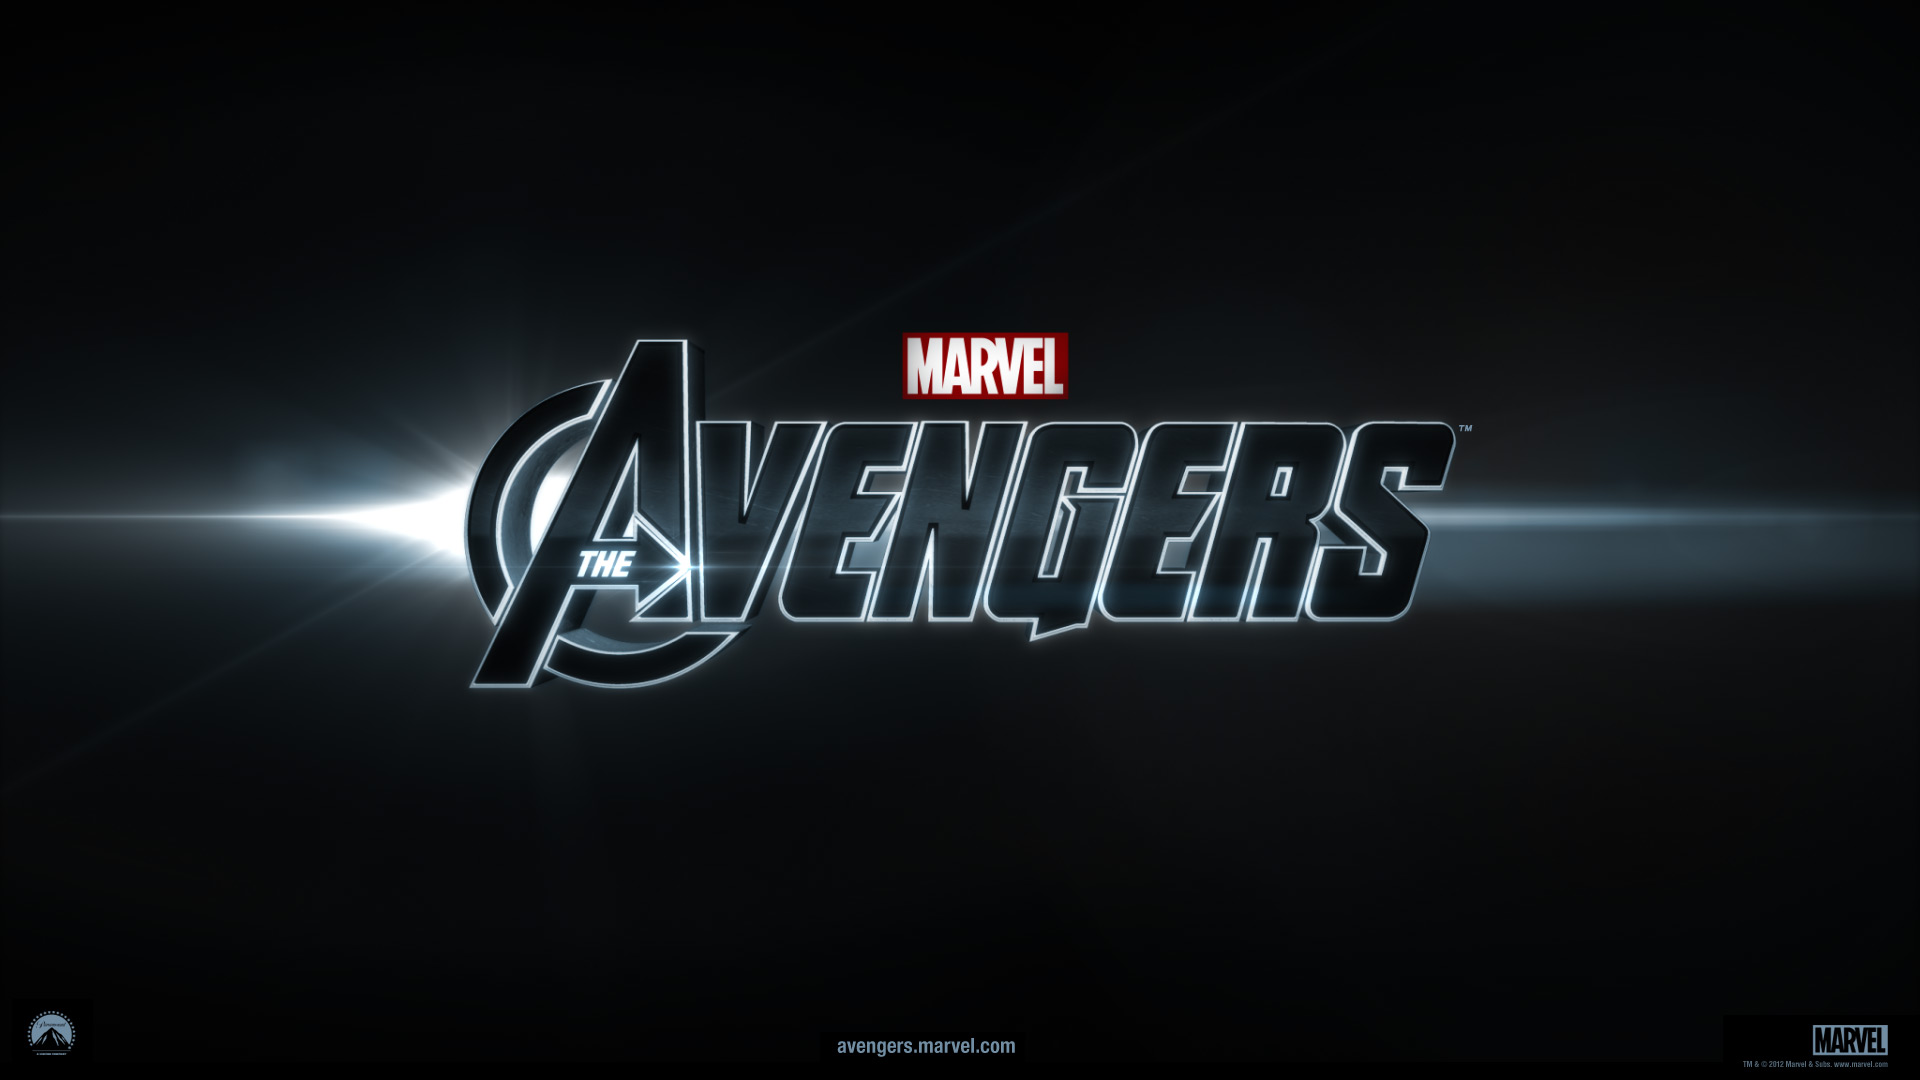 [复仇者联盟].The.Avengers.2012.UHD.BluRay.2160p.HEVC.TrueHD.7.1-TERMiNAL   55.97G-9.jpg